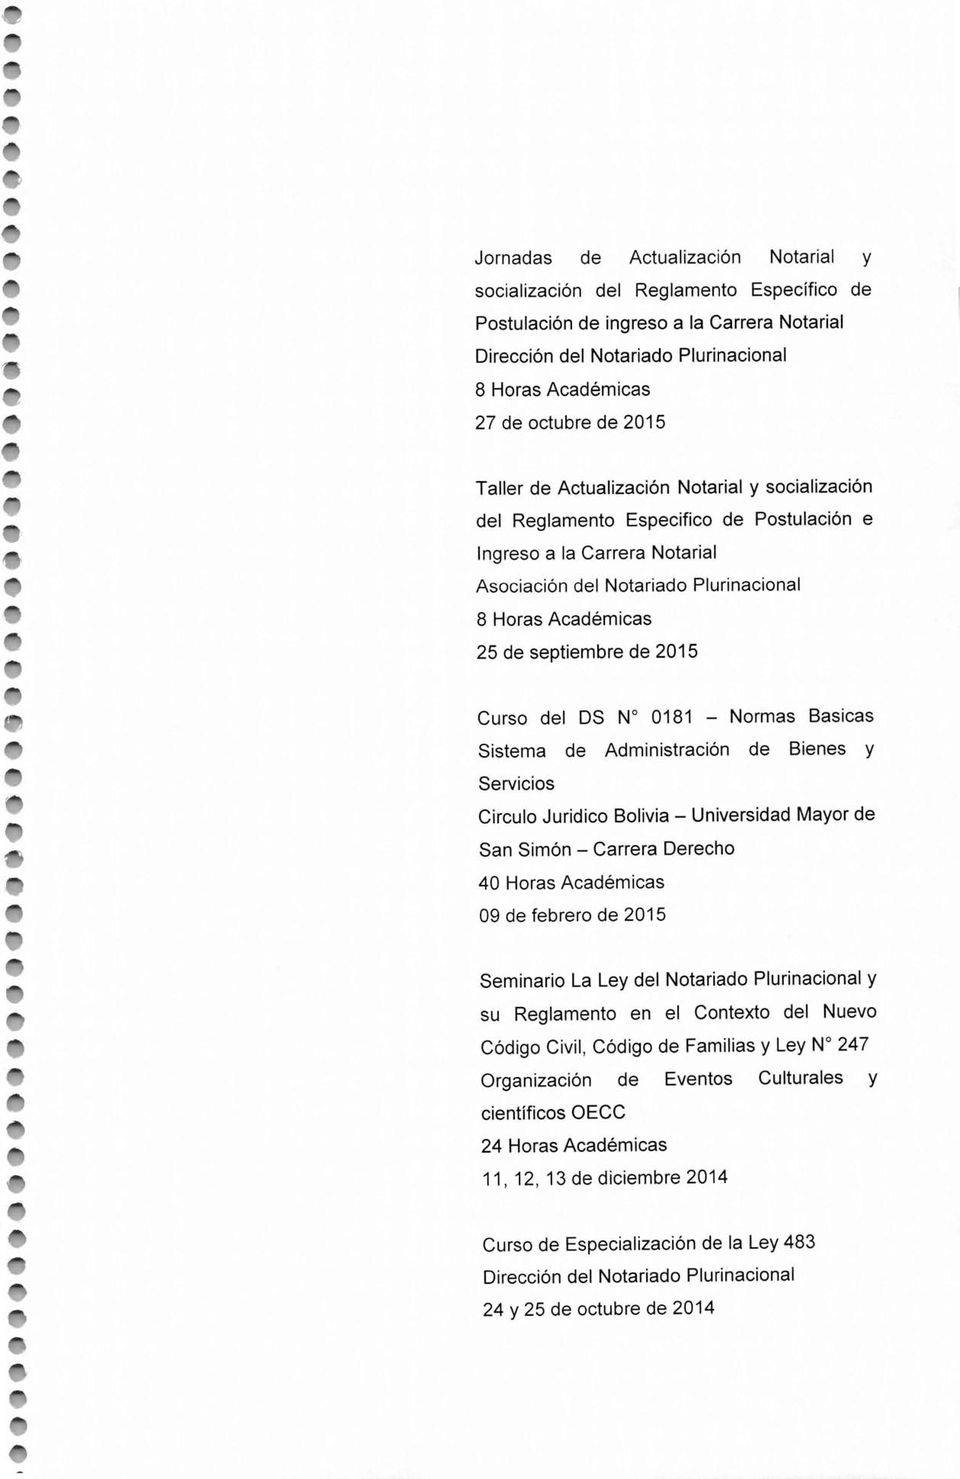 septiembre de 2015 Curso del OS N 0181 - Normas Basicas Sistema de Administración de Bienes y Servicios Circulo Juridico Bolivia - Universidad Mayor de San Simón - Carrera Derecho 40 Horas Académicas